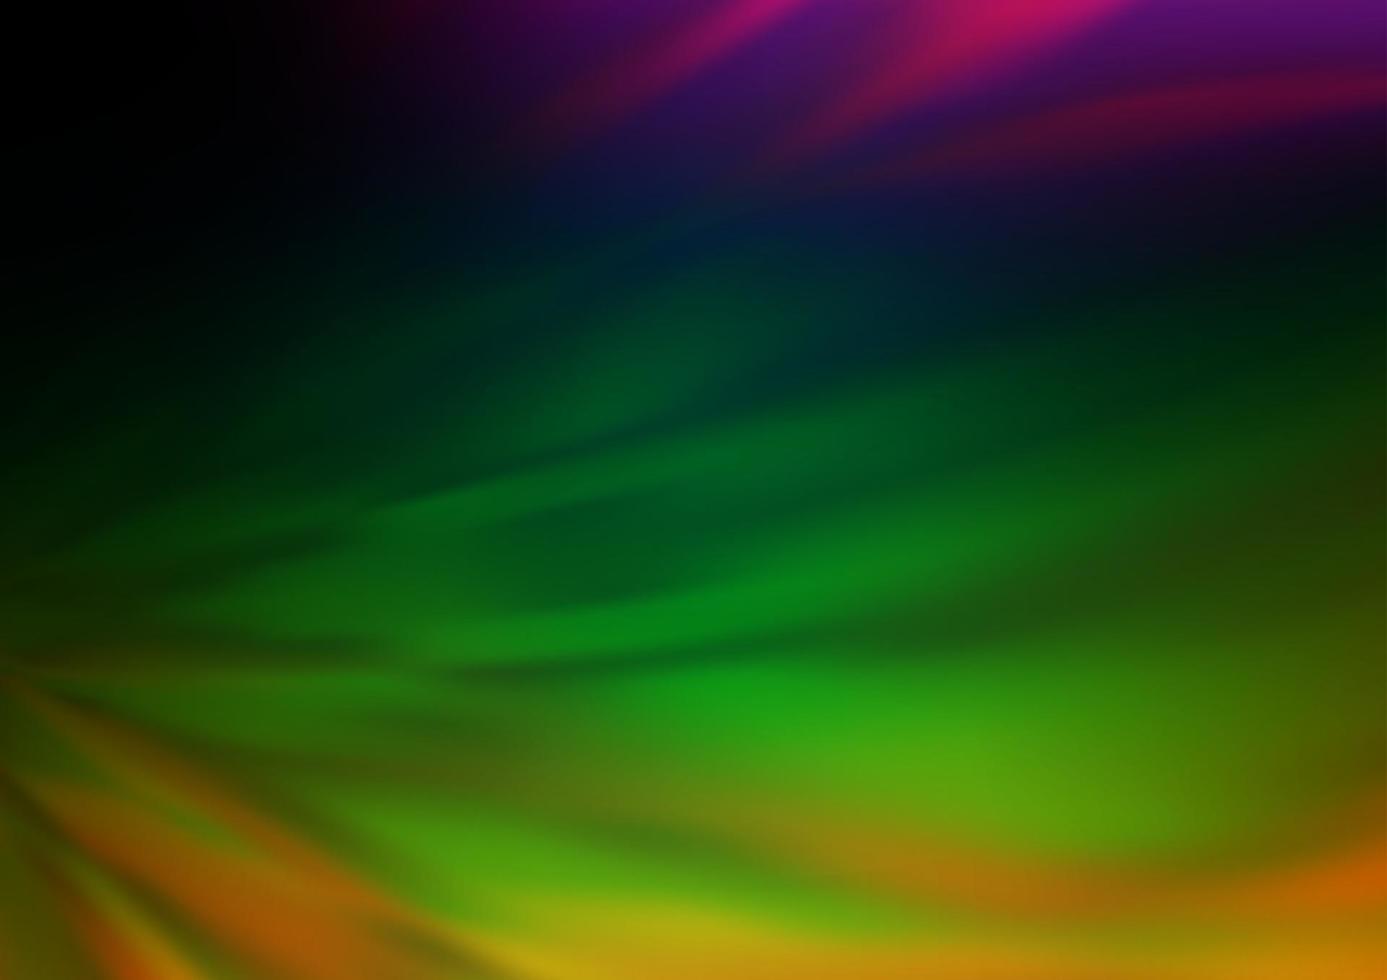 dunkle mehrfarbige, regenbogenfarbene Vektorzusammenfassung der Hintergrund jedoch unscharf. vektor